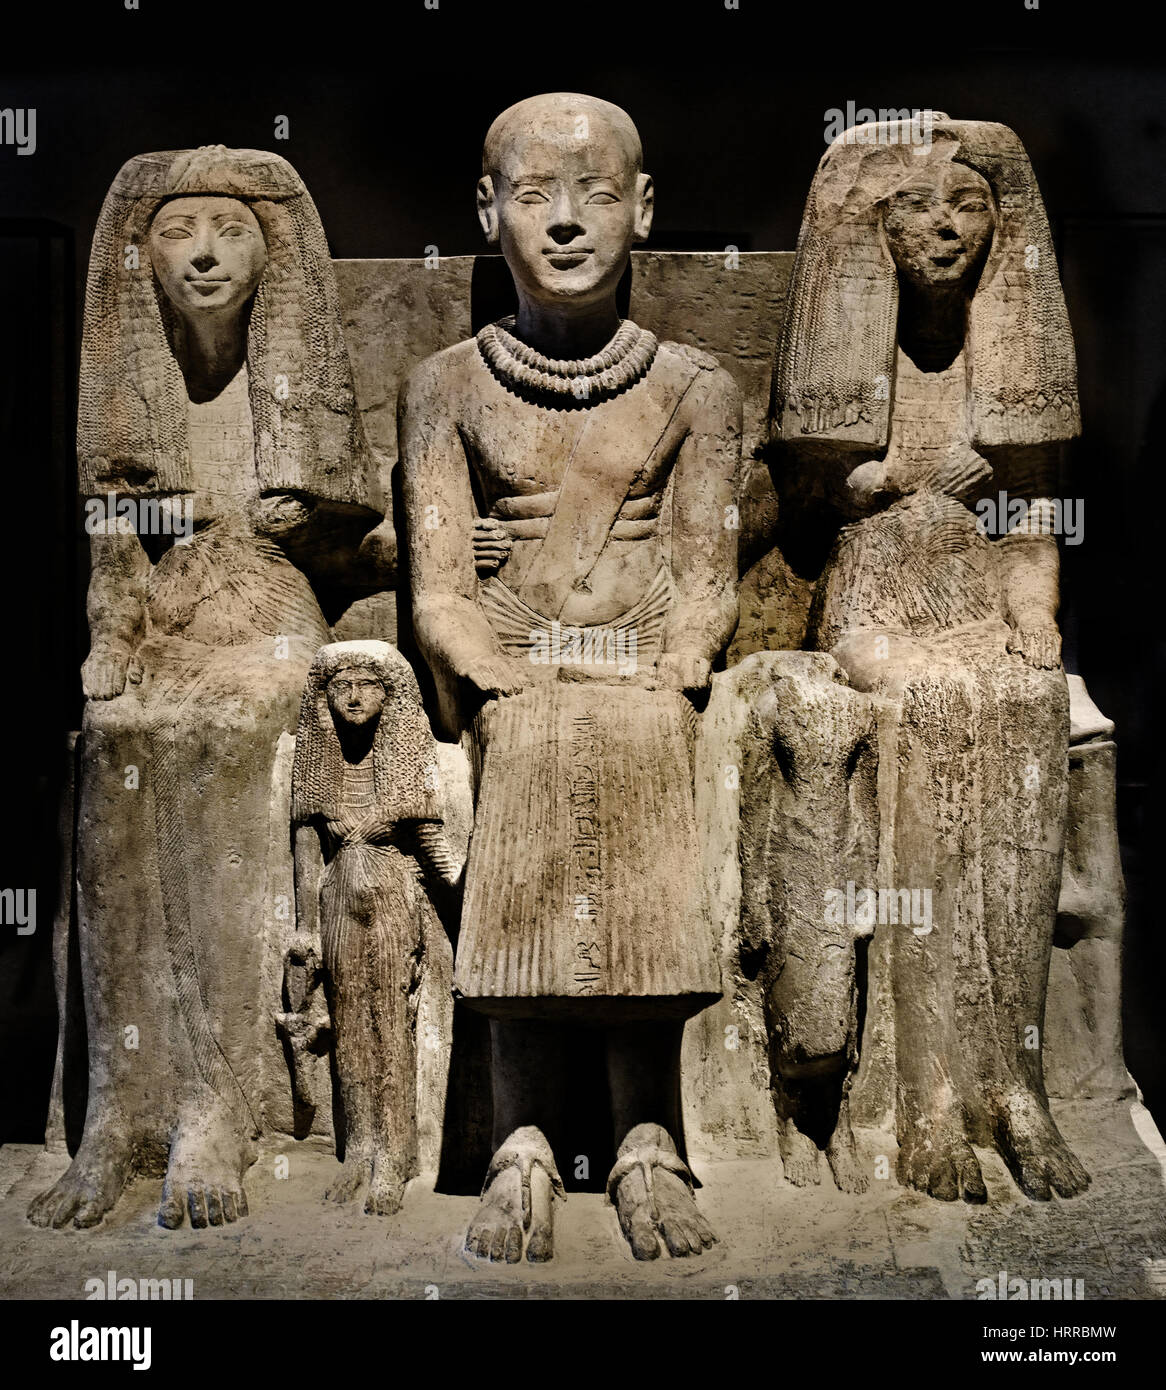 La scultura del XIX dinastia, Saqqara, testimonianza dell'epoca di Ramses II (1303 - 1213). Sulla parte anteriore del quadro, Ptahmai siede tra la moglie Hatshepsut andhis Iniuhaj figlia. La figura centrale è Ptahmai, che è calvo con una doppia catena di remi di oro e perle di cordone intorno al collo. Le due catene punto per i suoi meriti militari, probabilmente durante il vittorioso guerre del faraone Ramses II. Dopo il suo tempo di militari, Ptahmai Wab sacerdote di Ptah è stato raffigurato con la testa rasata secondo la purezza del sacerdozio. Foto Stock